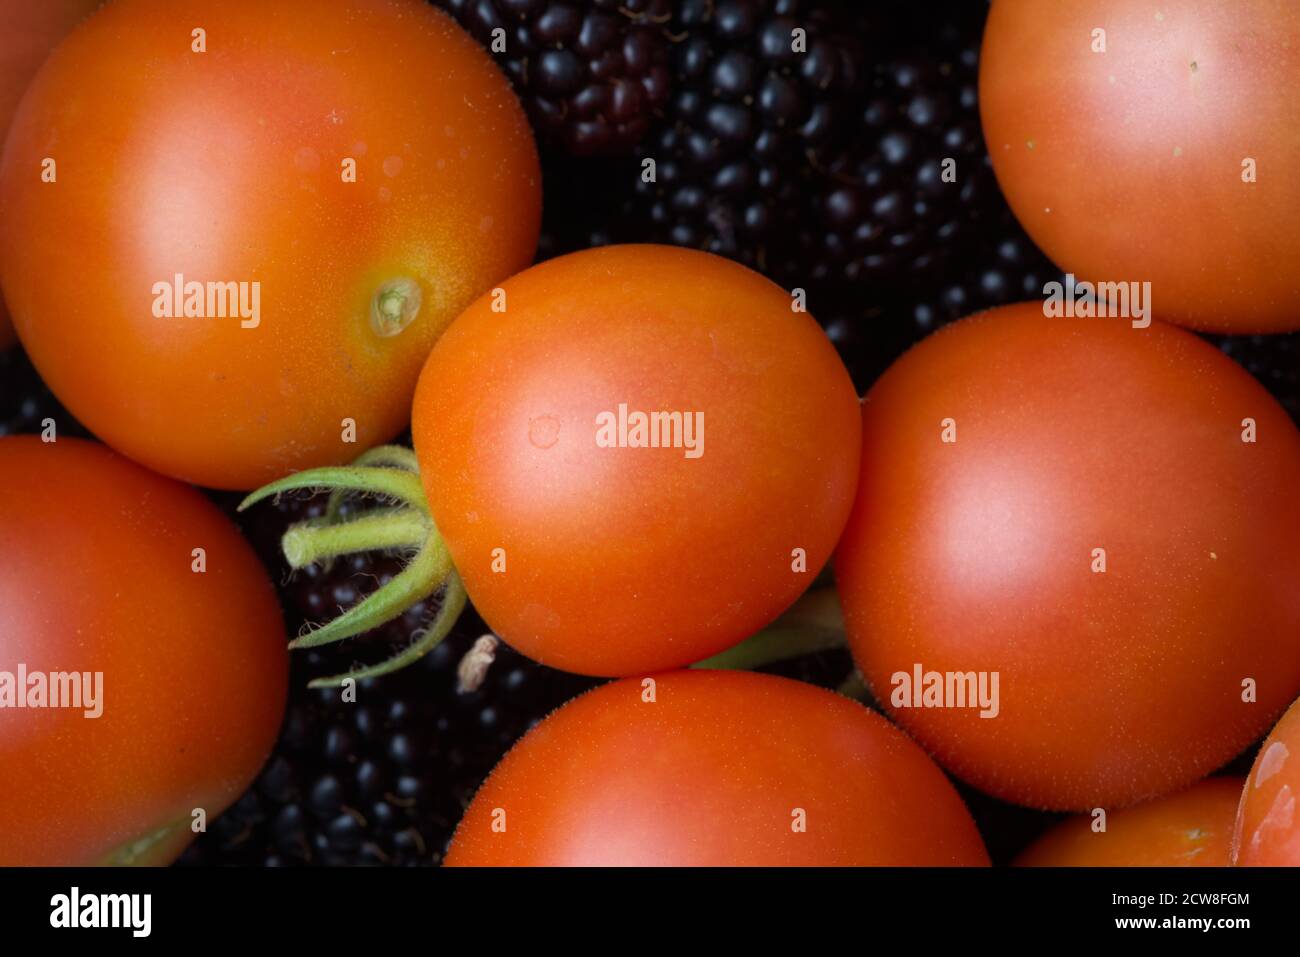 6 - la luce soffusa mette in evidenza la forma rotonda di questi frutti appena raccolti in casa. Pomodori e more. Colori vivaci, sfondo del cibo. Foto Stock